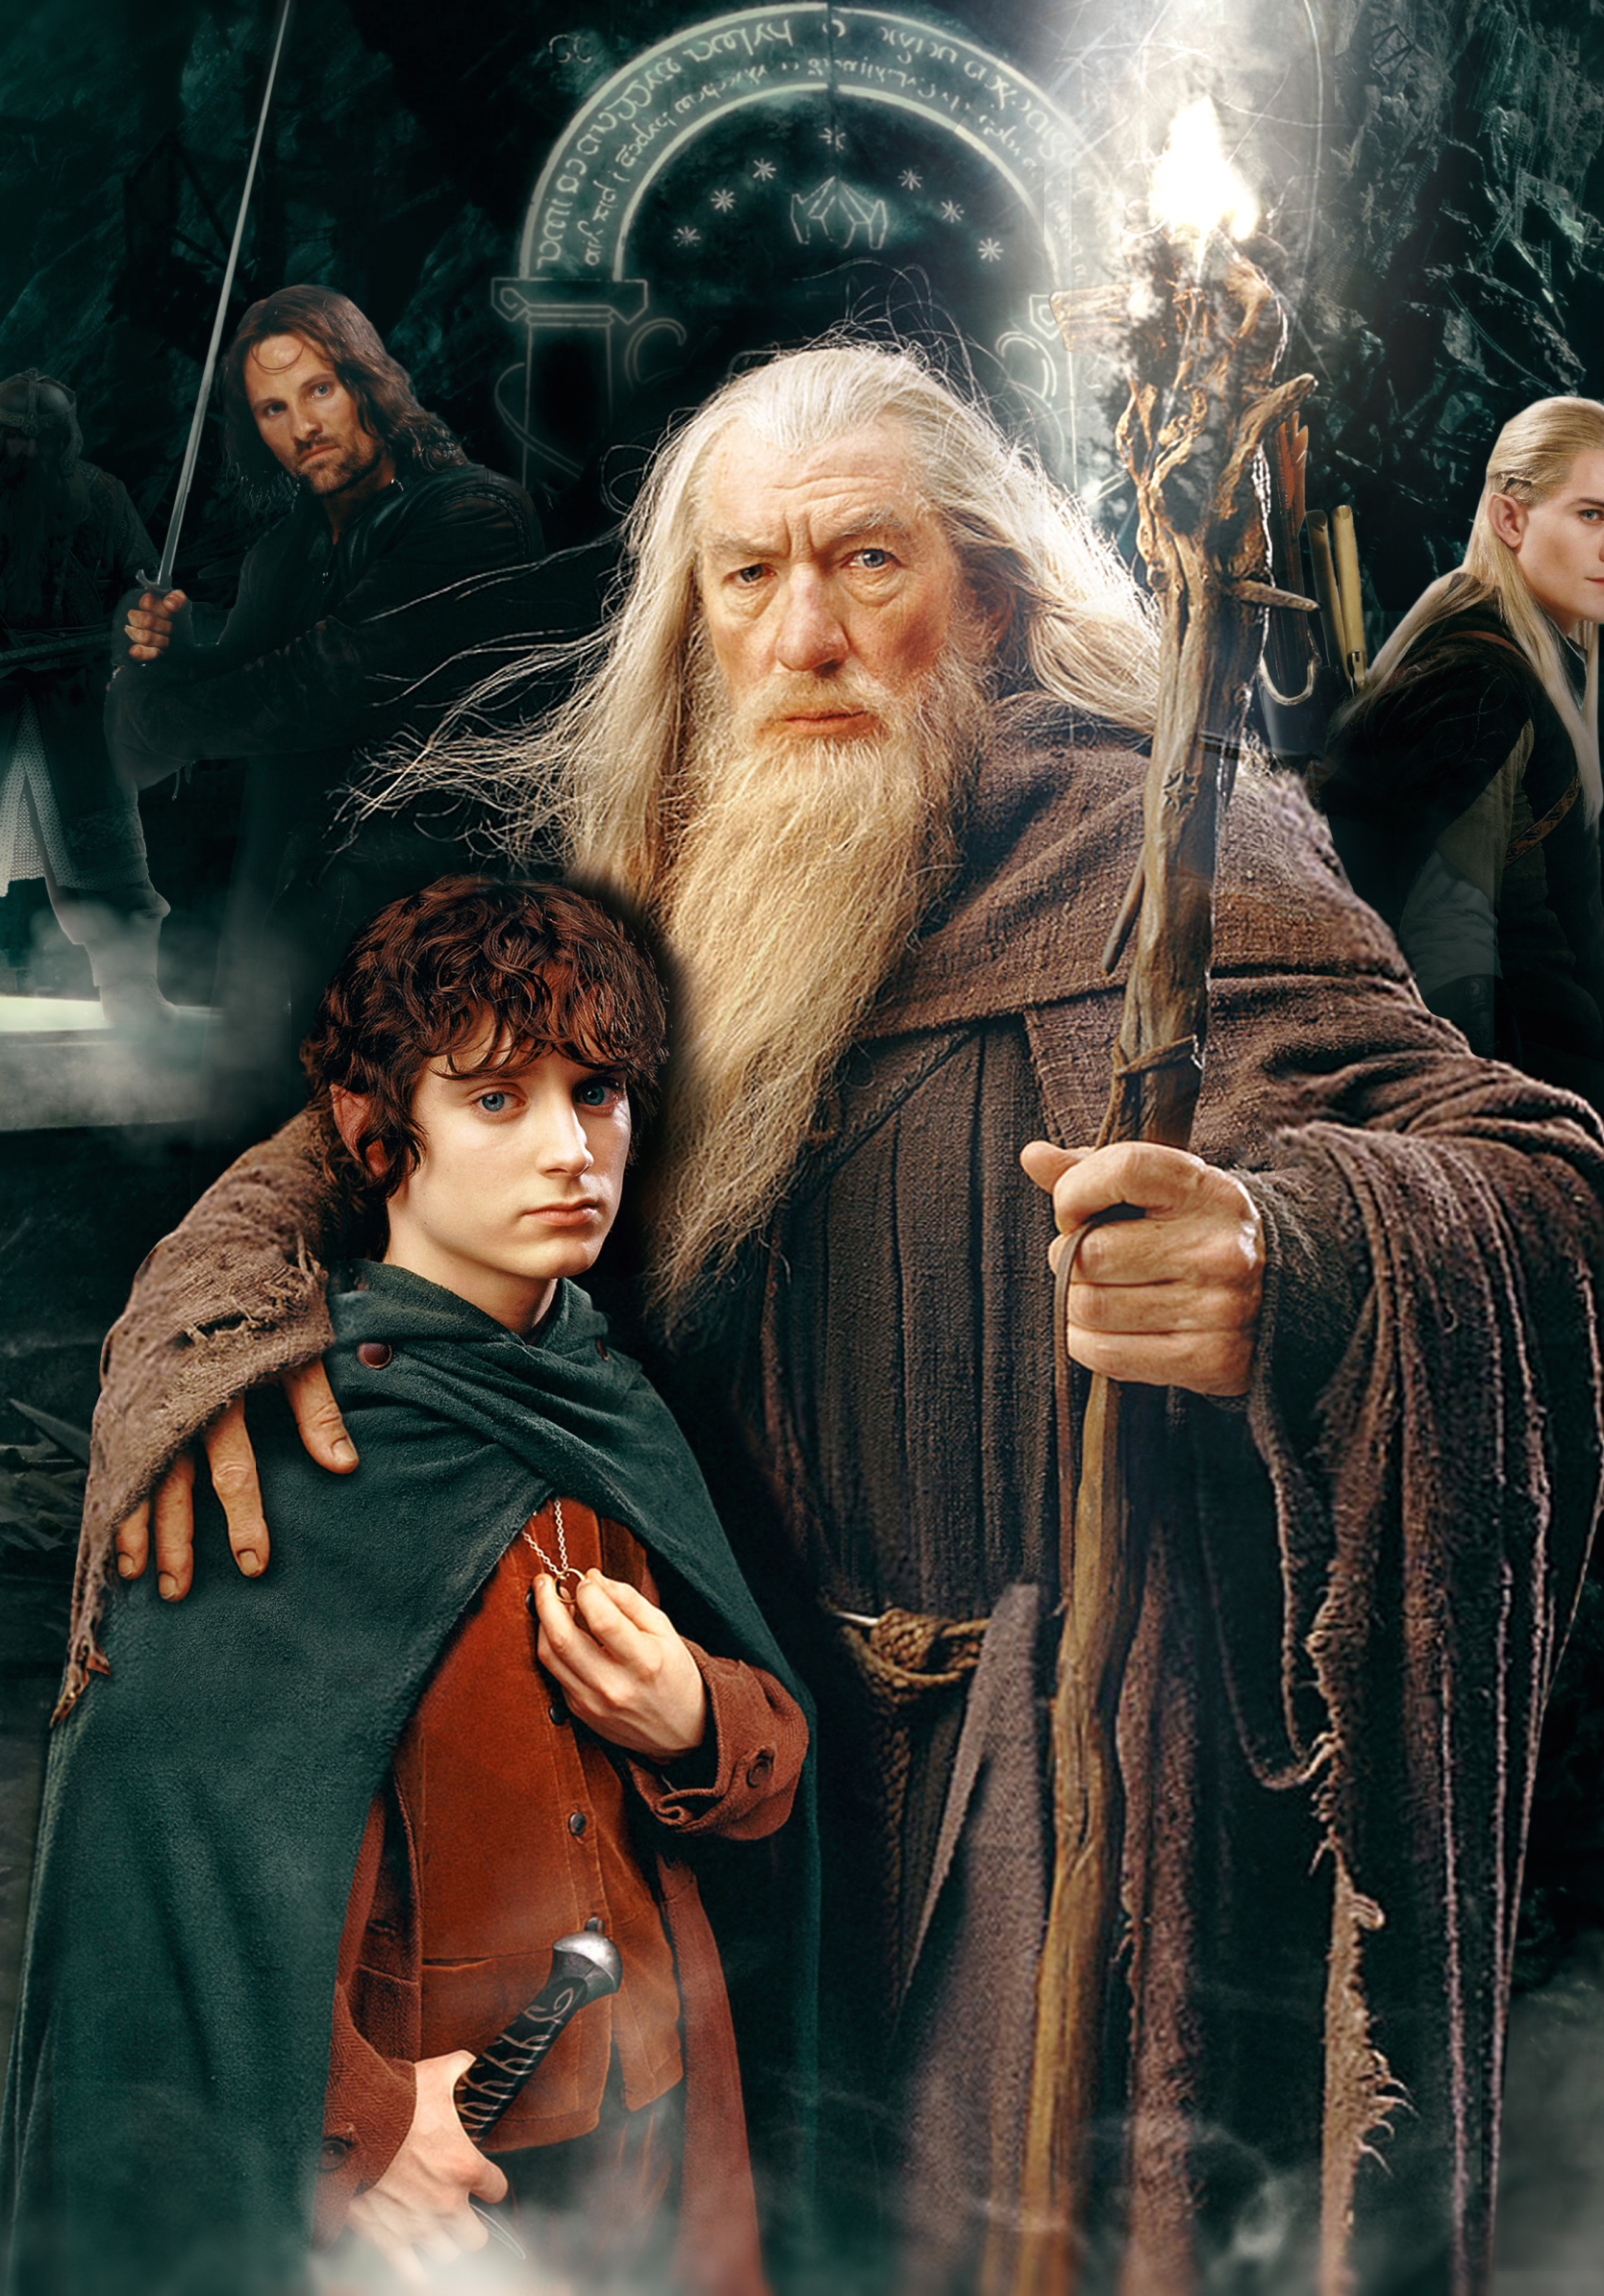 Descarga gratuita de fondo de pantalla para móvil de El Señor De Los Anillos, Películas, Gandalf, Señor De Los Anillos, Frodo Bolsón, Aragorn.